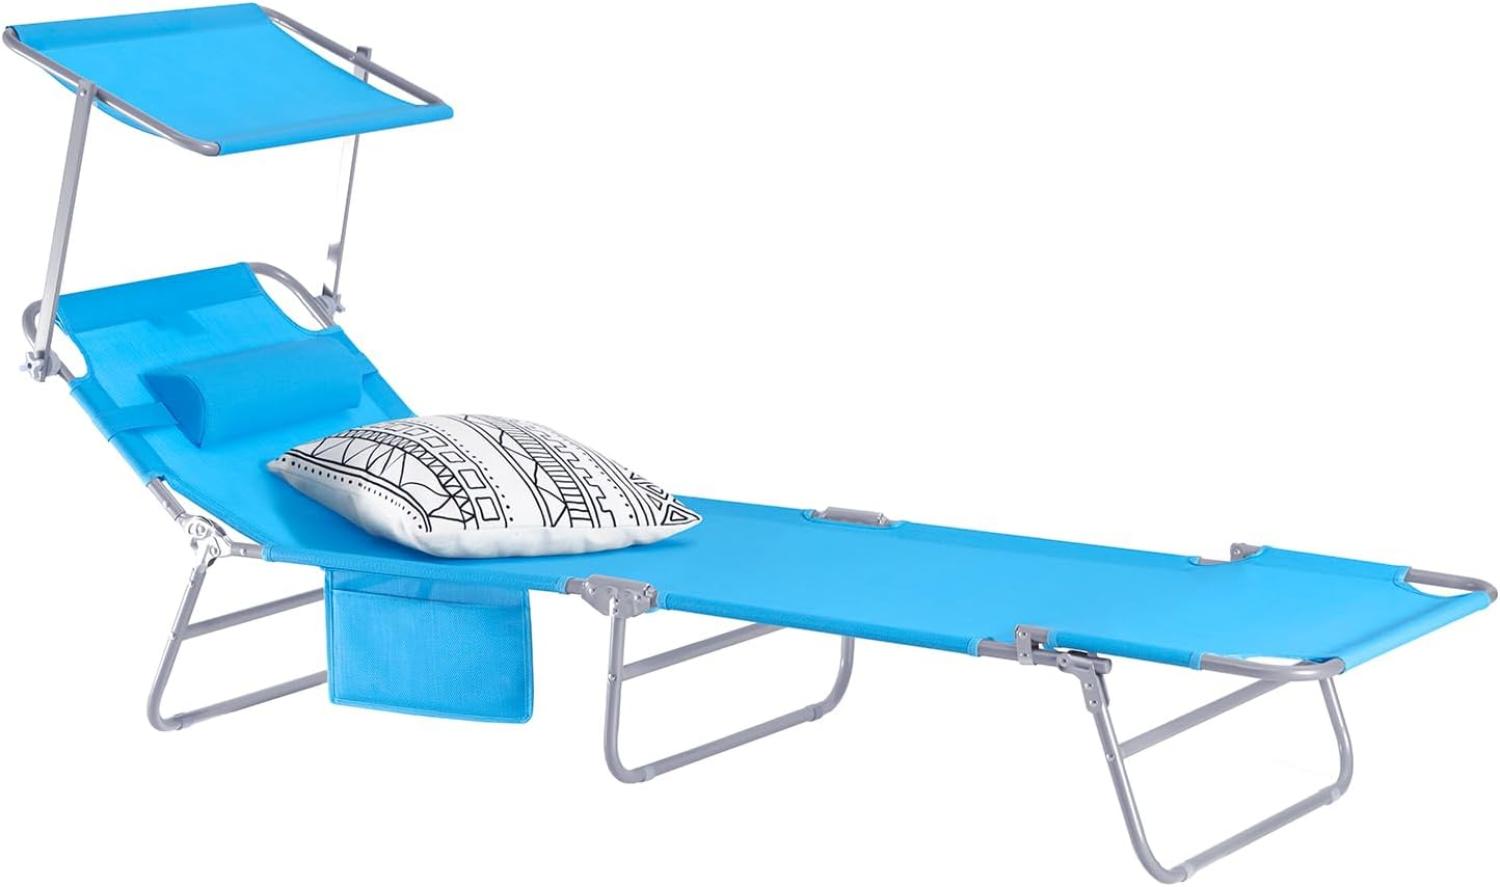 SoBuy OGS48-B Sonnenliege mit abnehmbarem Kopfkissen und verstellbarem Sonnendach Gartenliege mit Seitentasche Strandliege Relaxstuhl Liegestuhl klappbar Blau bis 150 kg belastbar Bild 1